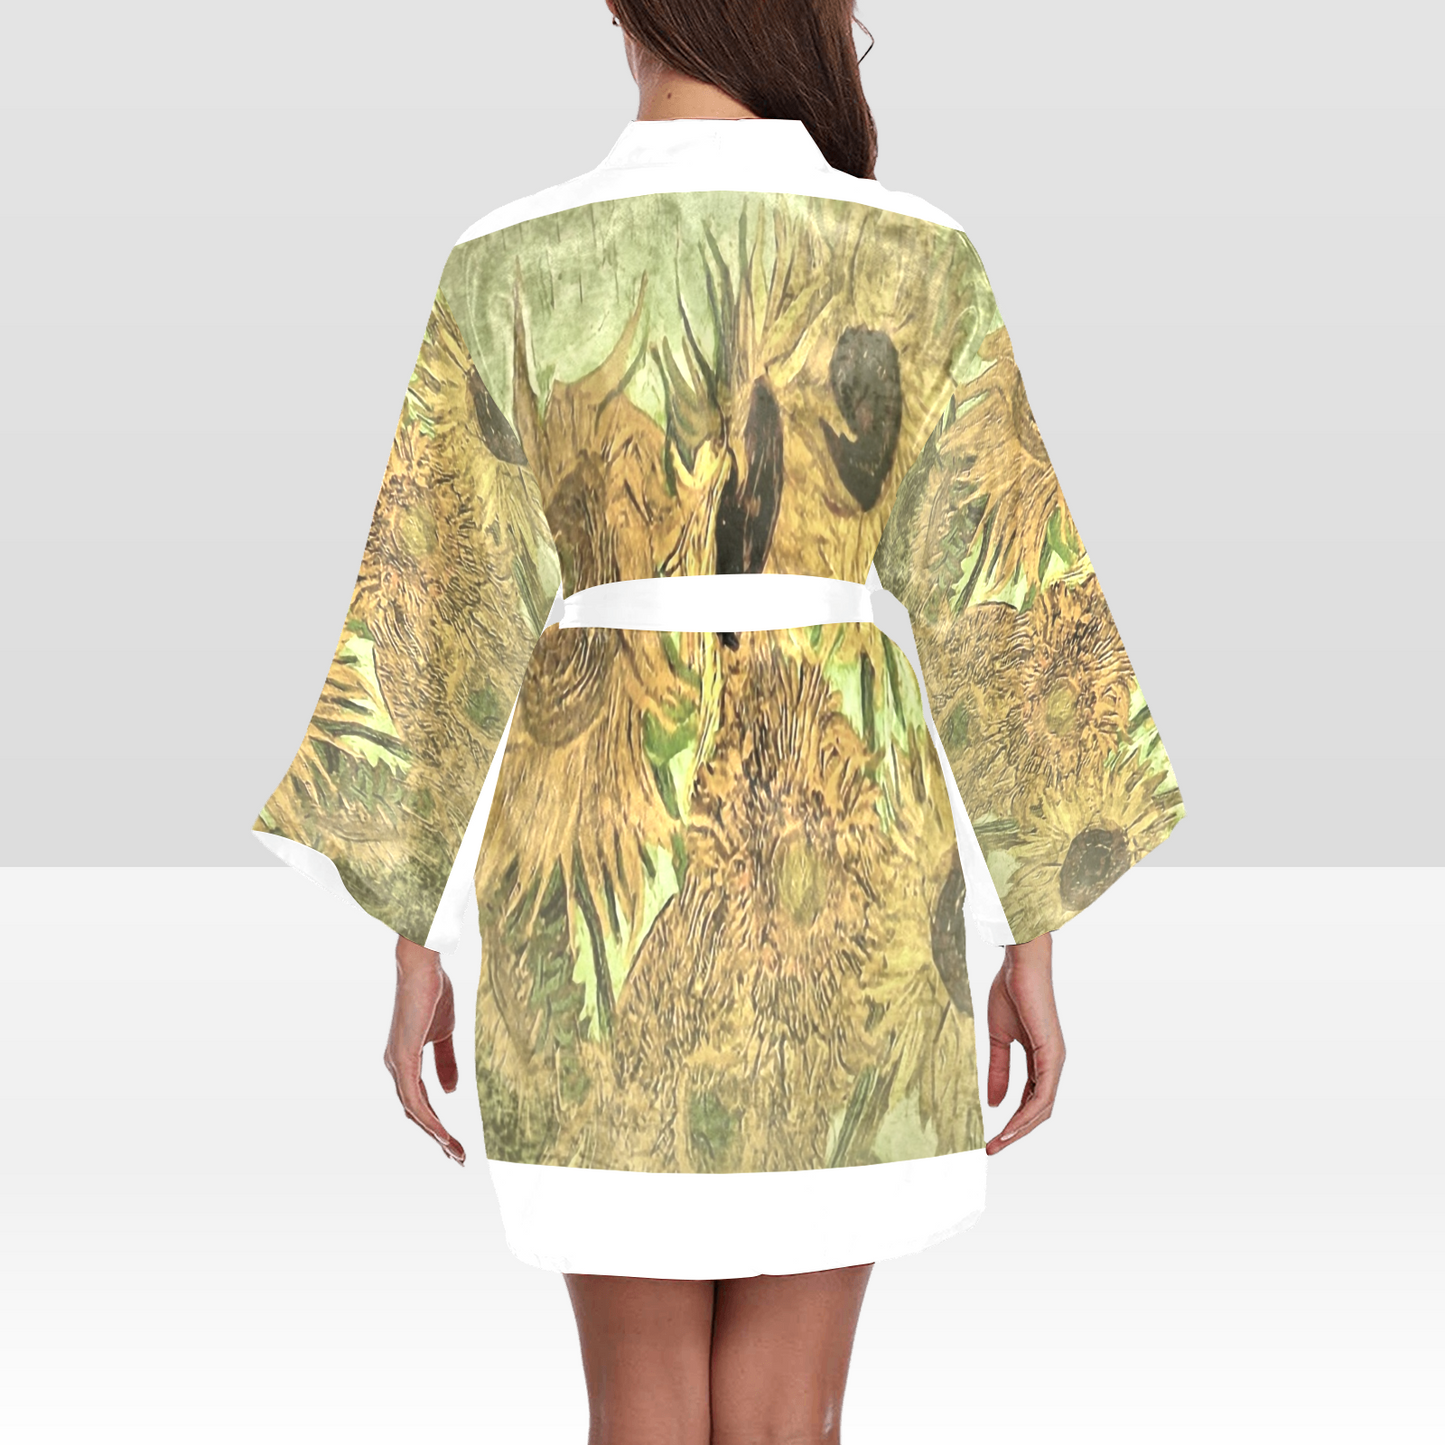 Vintage Floral Kimono Robe, Black or White Trim, Sizes XS to 2XL, Design 48x